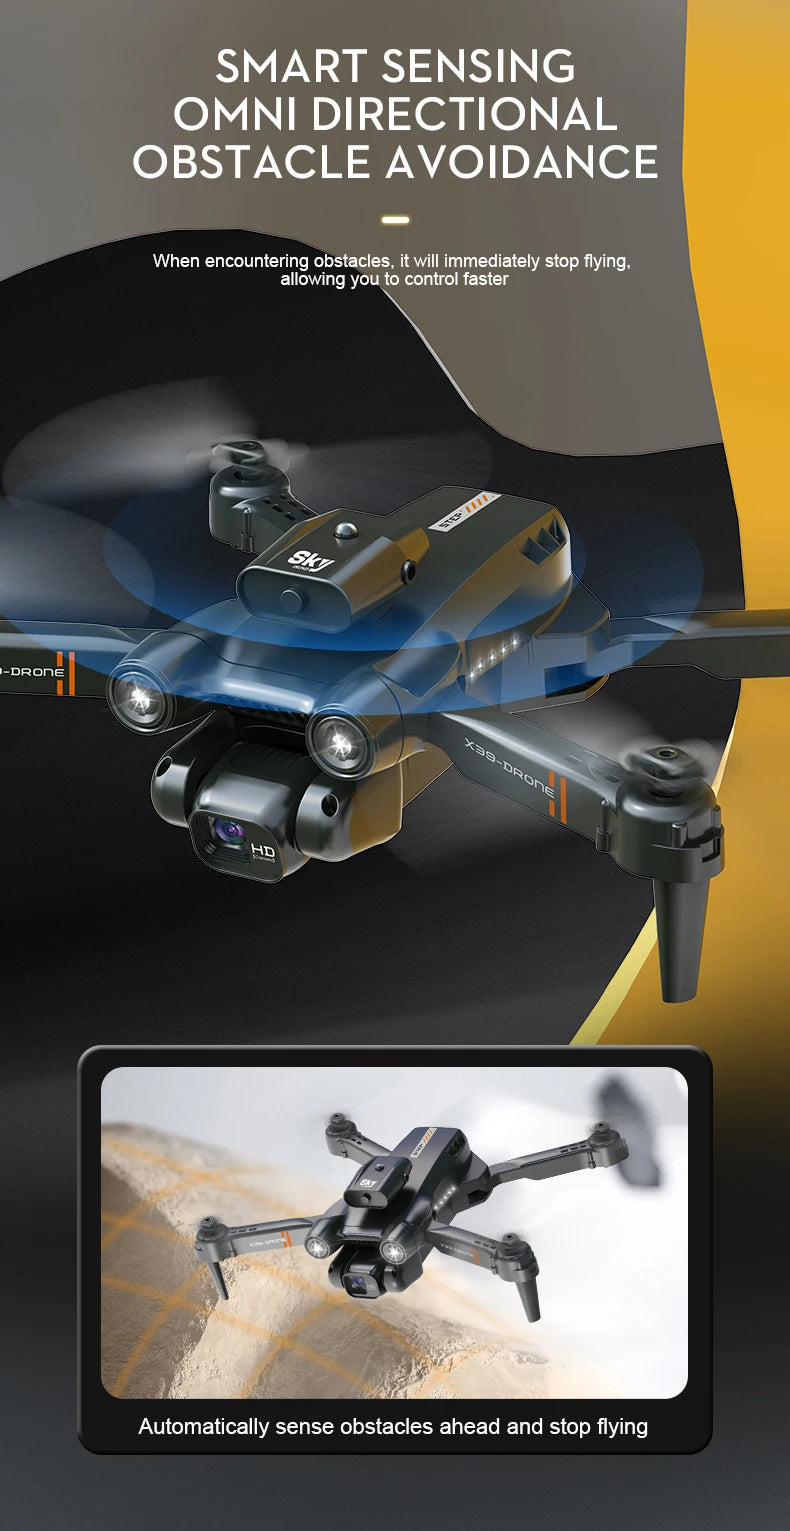 X39 Mini Drone, sk -drone hd automatically senses